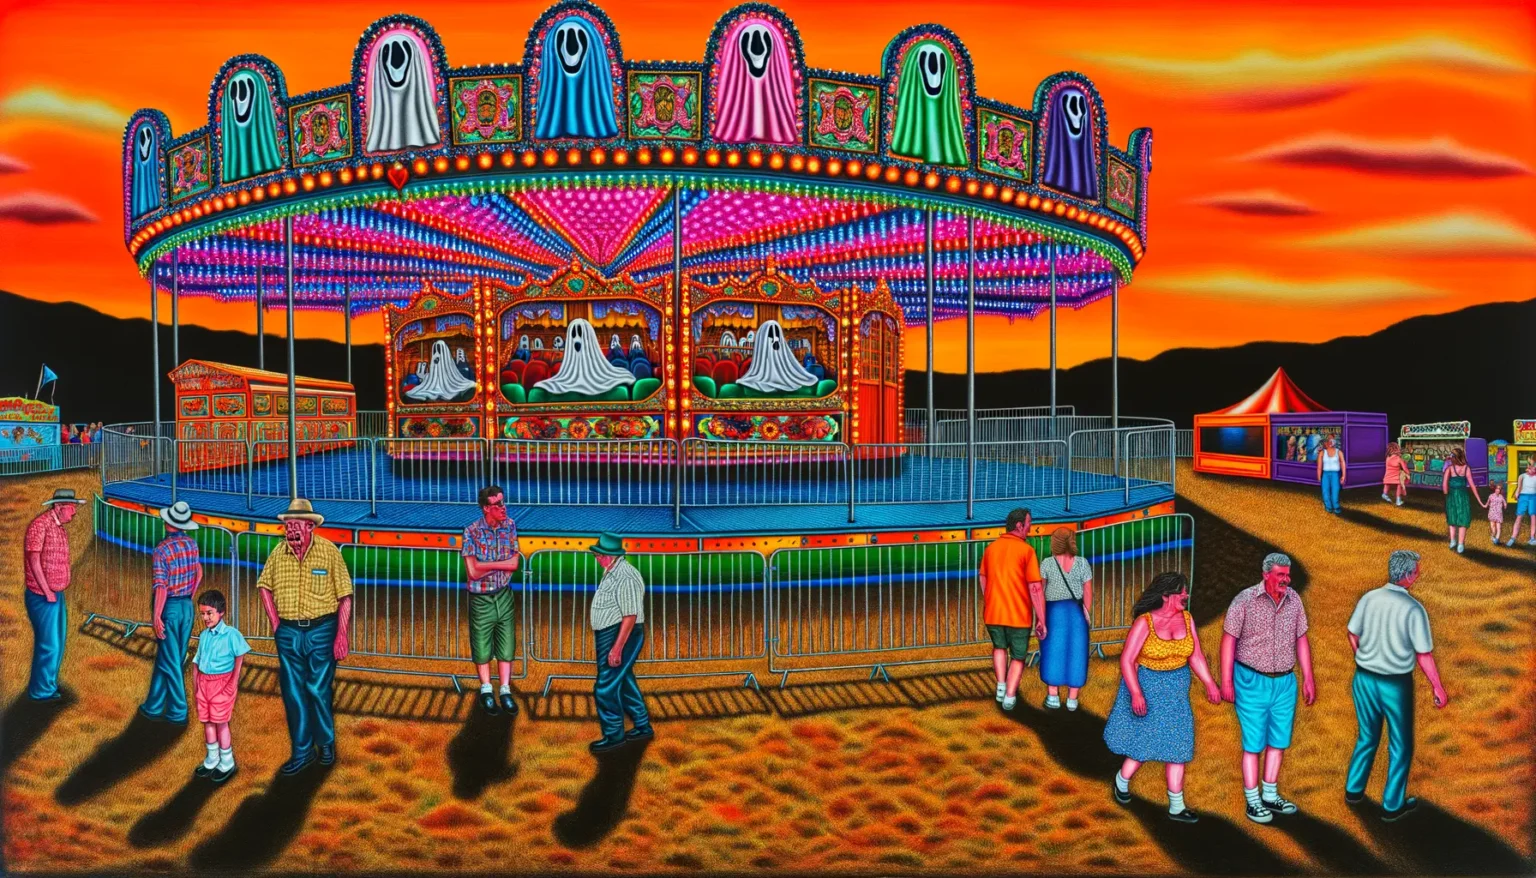 Leuchtender Jahrmarkt bei Sonnenuntergang mit einem Karussell, das von bunten Lichtern beleuchtet ist. Menschen spazieren über das Festgelände, manche stehen oder gehen paarweise, während im Hintergrund ein orange-roter Himmel über einem bergigen Horizont zu sehen ist.